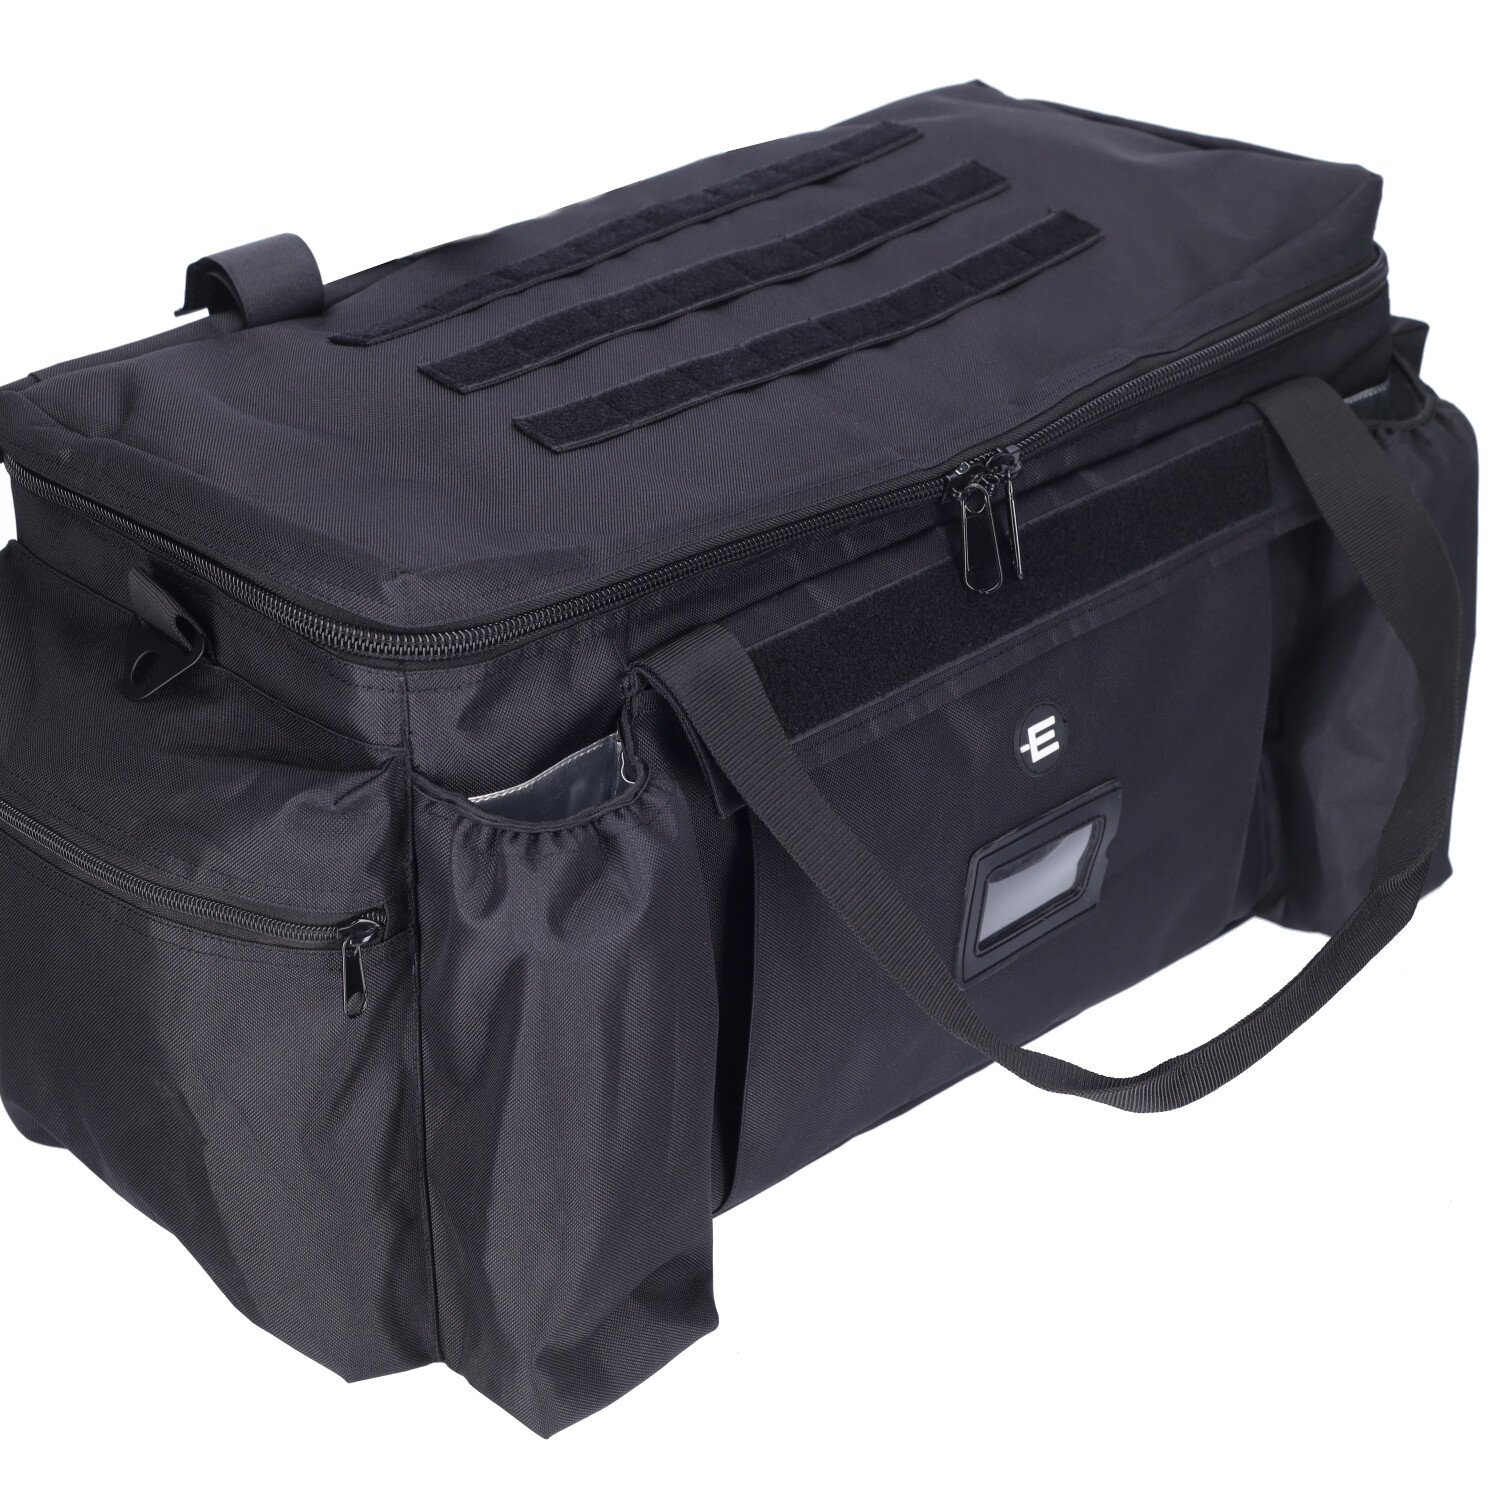 ETZEL® Einsatz- und Ausrüstungstasche, schwarz Volumen: 40 Liter, Taschen,  Koffer, Rucksäcke, Ausrüstung und Zubehör, Polizei / Ordnungsbehörden